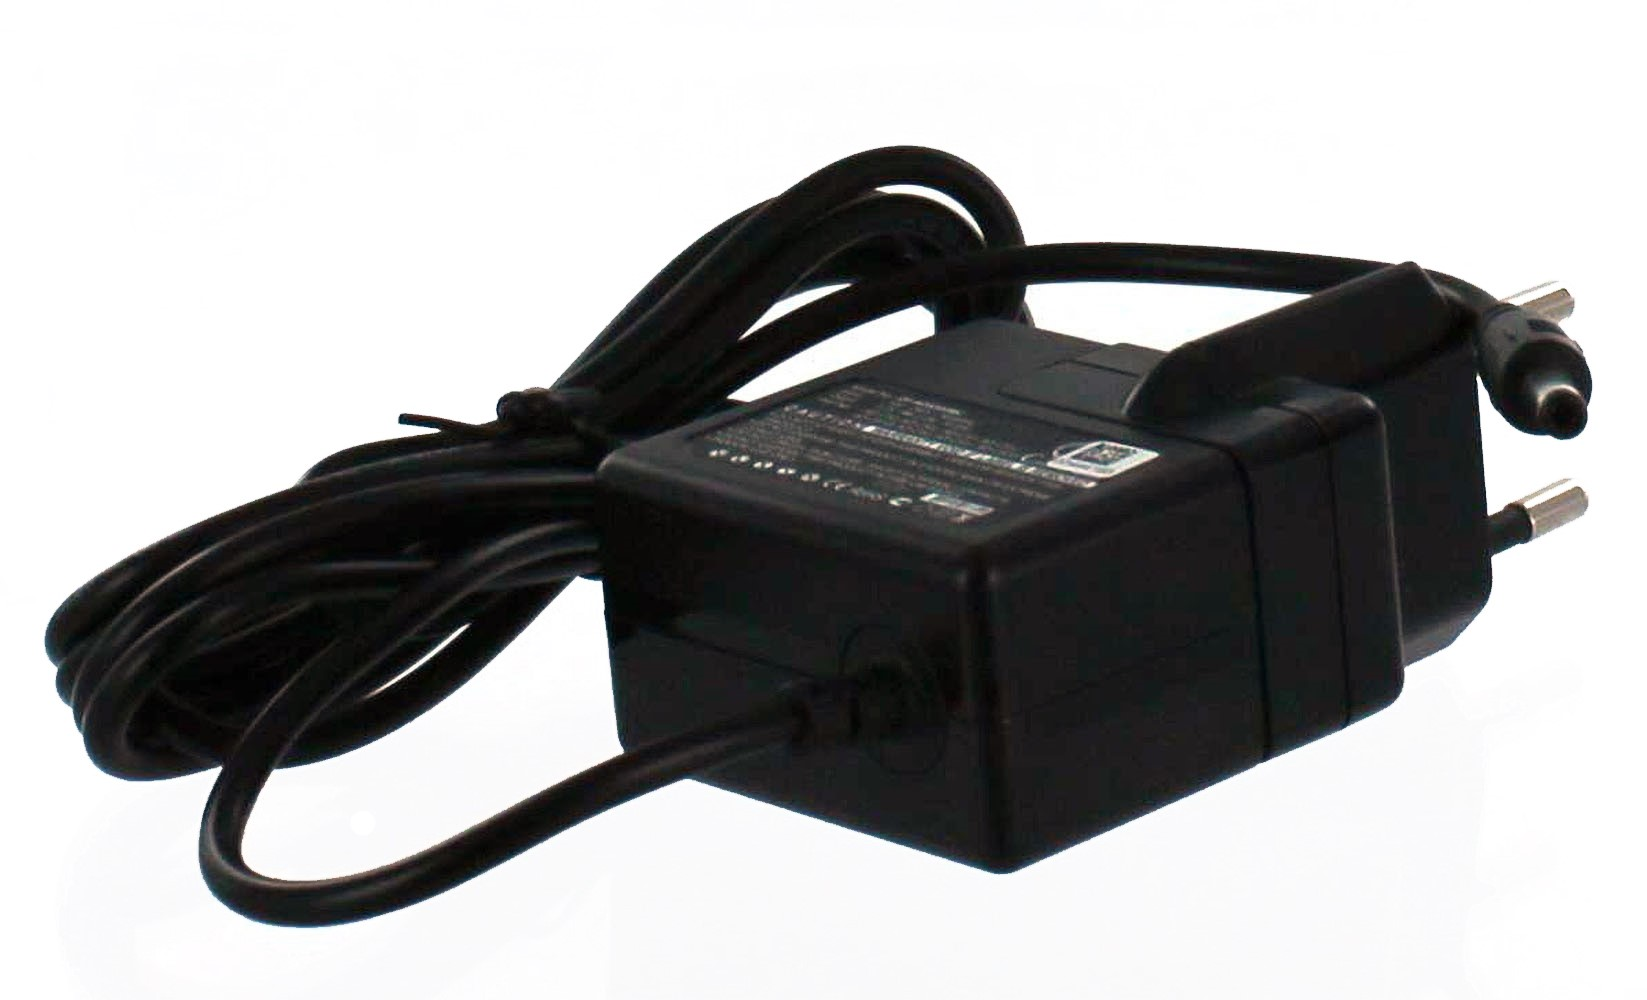 MOBILOTEC Netzteil Volt, Exilim Netzteil/Ladegerät 5.3 kompatibel Casio, mit Casio schwarz EX-S500